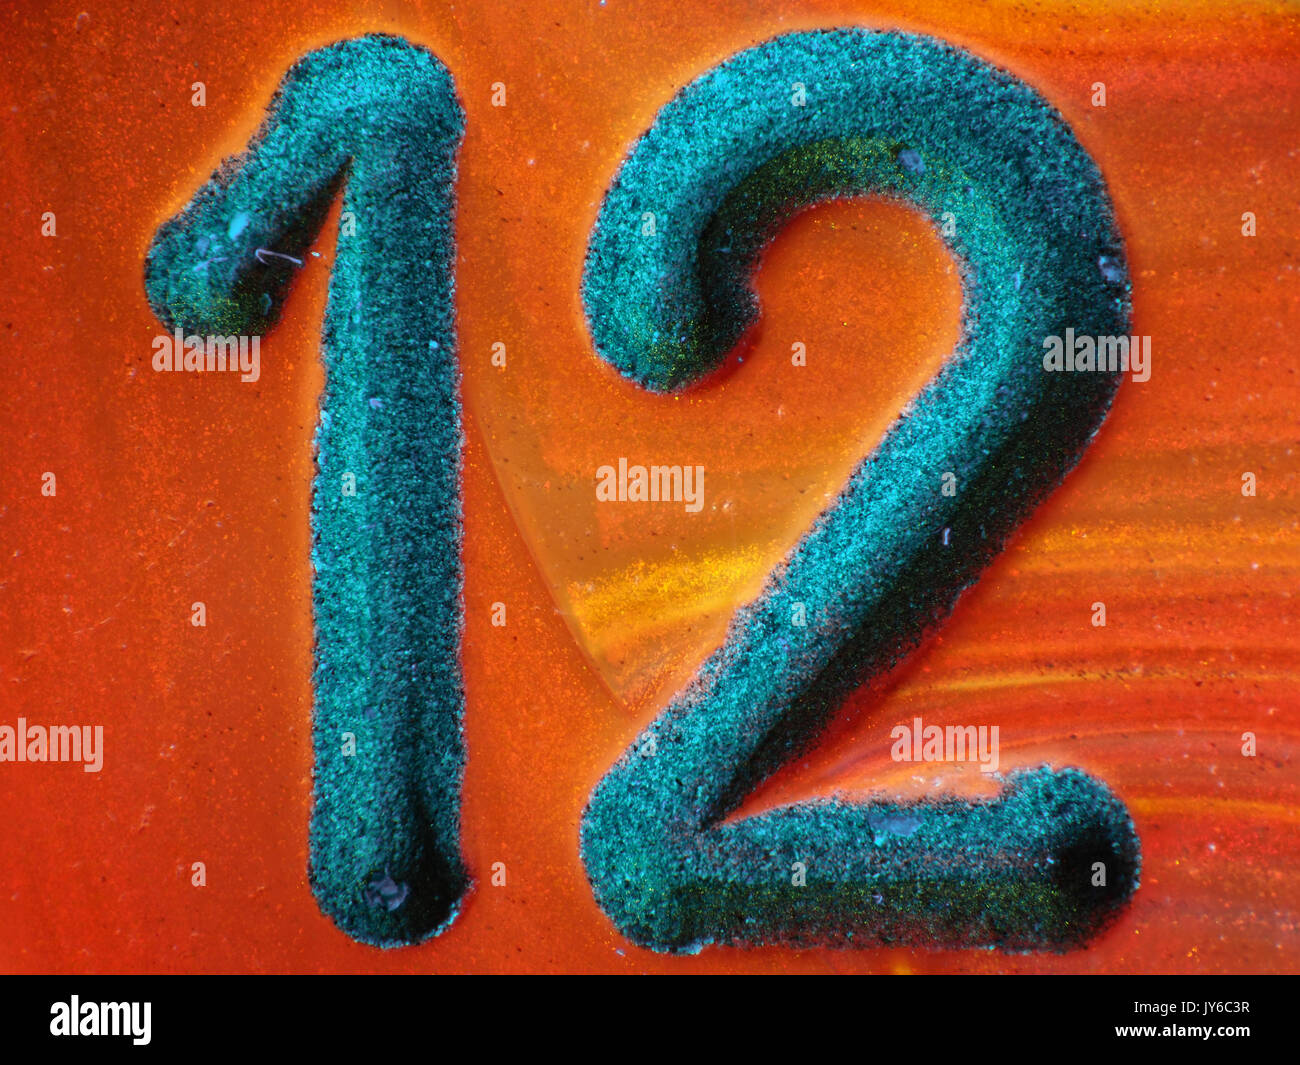 Nummer 12 von fluoreszierenden Kunststoff 12-seitige Würfel, uv + sichtbares Licht Schliffbild, 12-fache Vergrößerung, wenn gedruckt 10cm breit Stockfoto